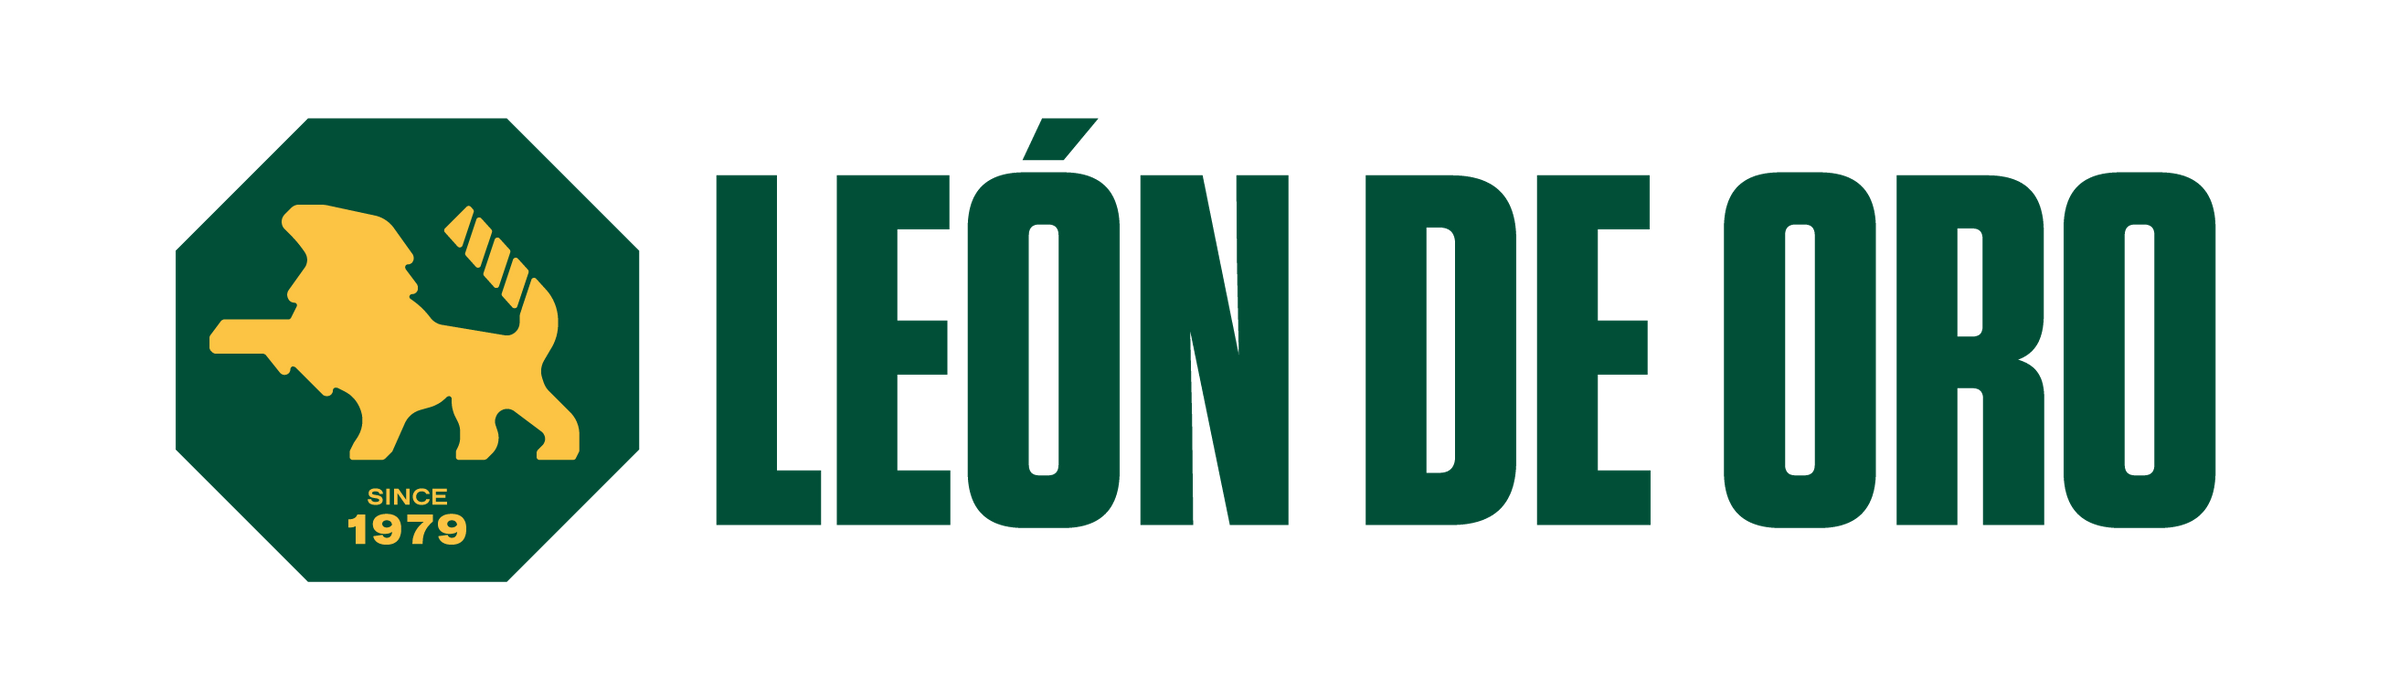 Leon de Oro logo